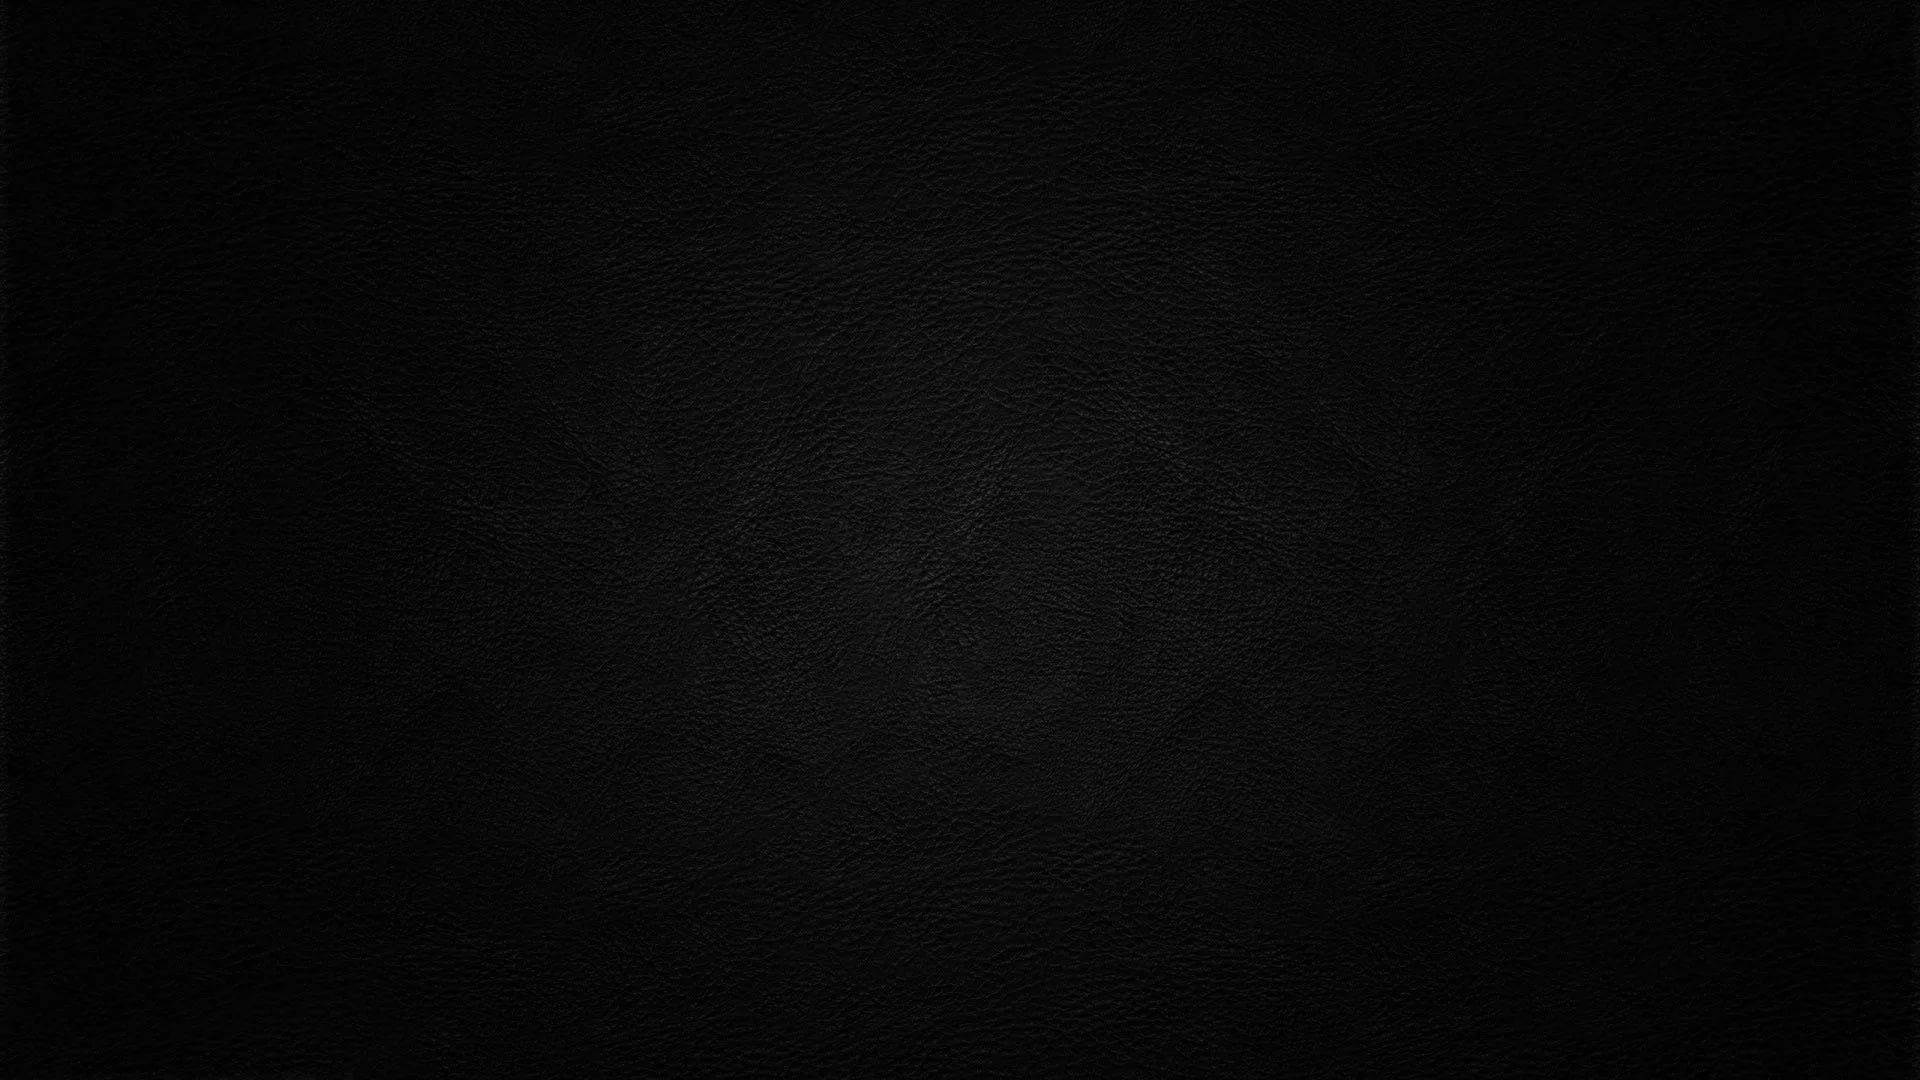 Full Dark Black Screen Wallpapers - Wallpaper Cave